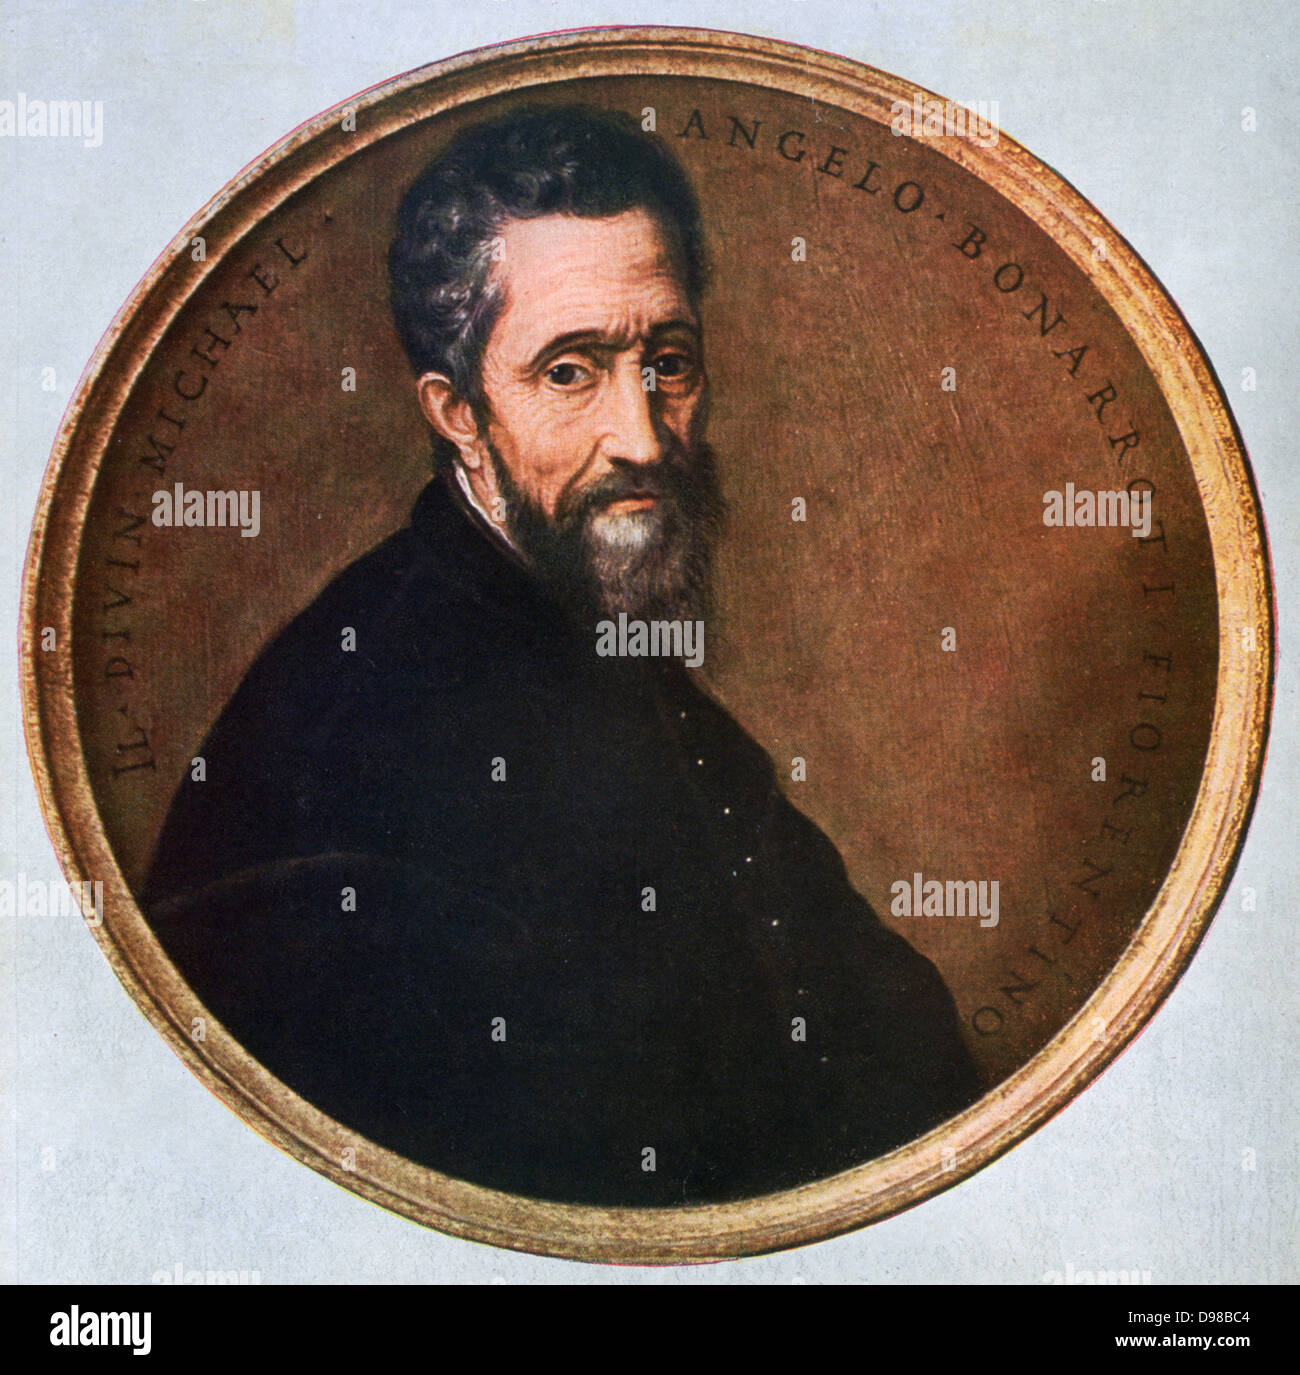 Michelangelo Buonarroti (1475-1564), italienische Renaissance Künstler, Ingenieur und Architekt, nach 1535. Bild nach dem Jacopino del Conte. Stockfoto